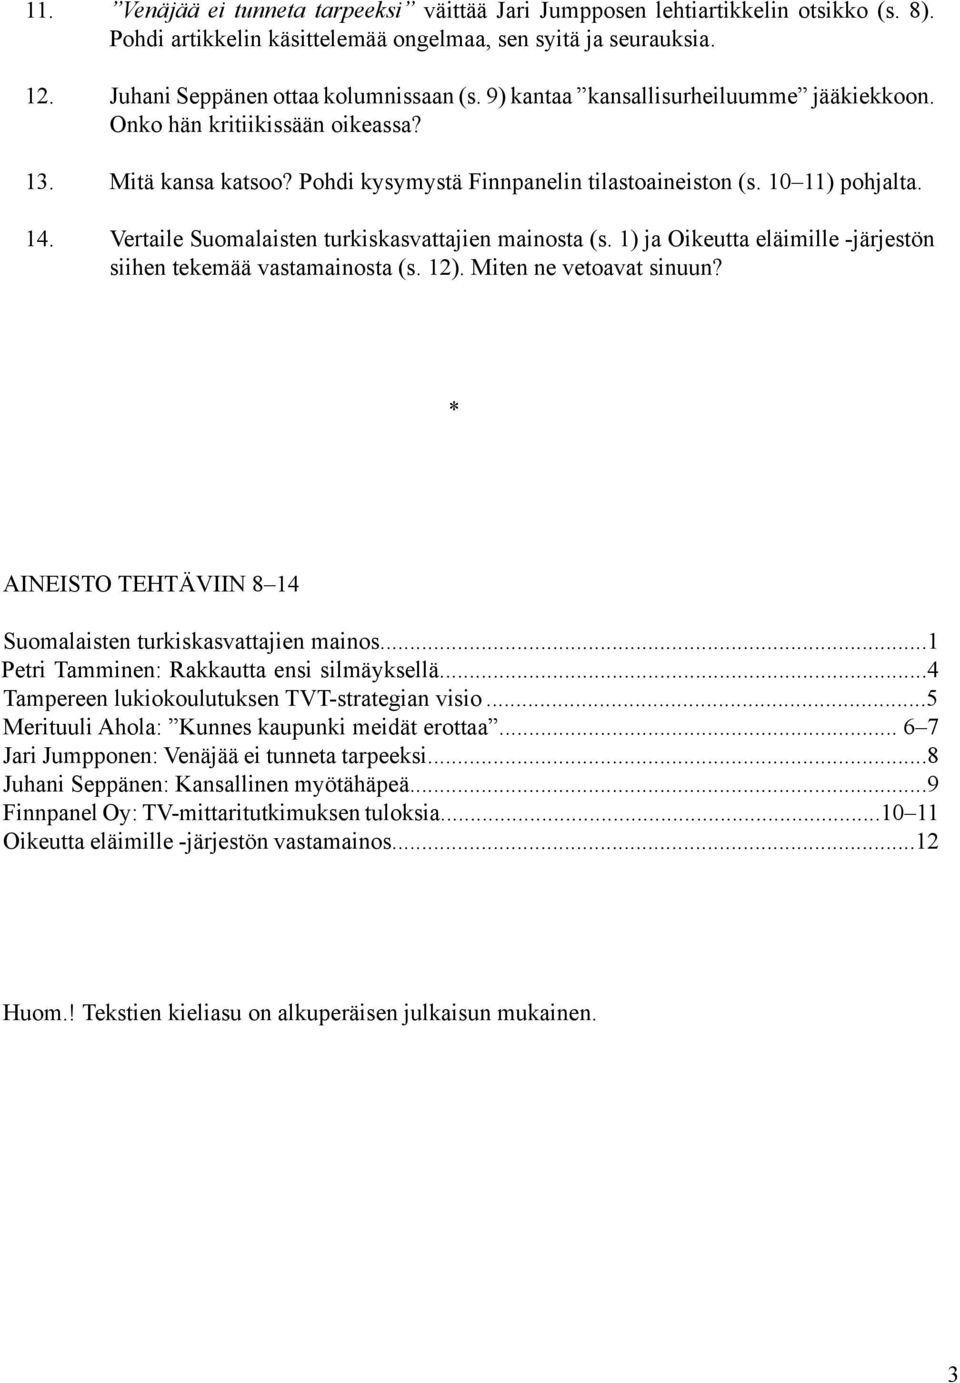 Vertaile Suomalaisten turkiskasvattajien mainosta (s. 1) ja Oikeutta eläimille -järjestön siihen tekemää vastamainosta (s. 12). Miten ne vetoavat sinuun?